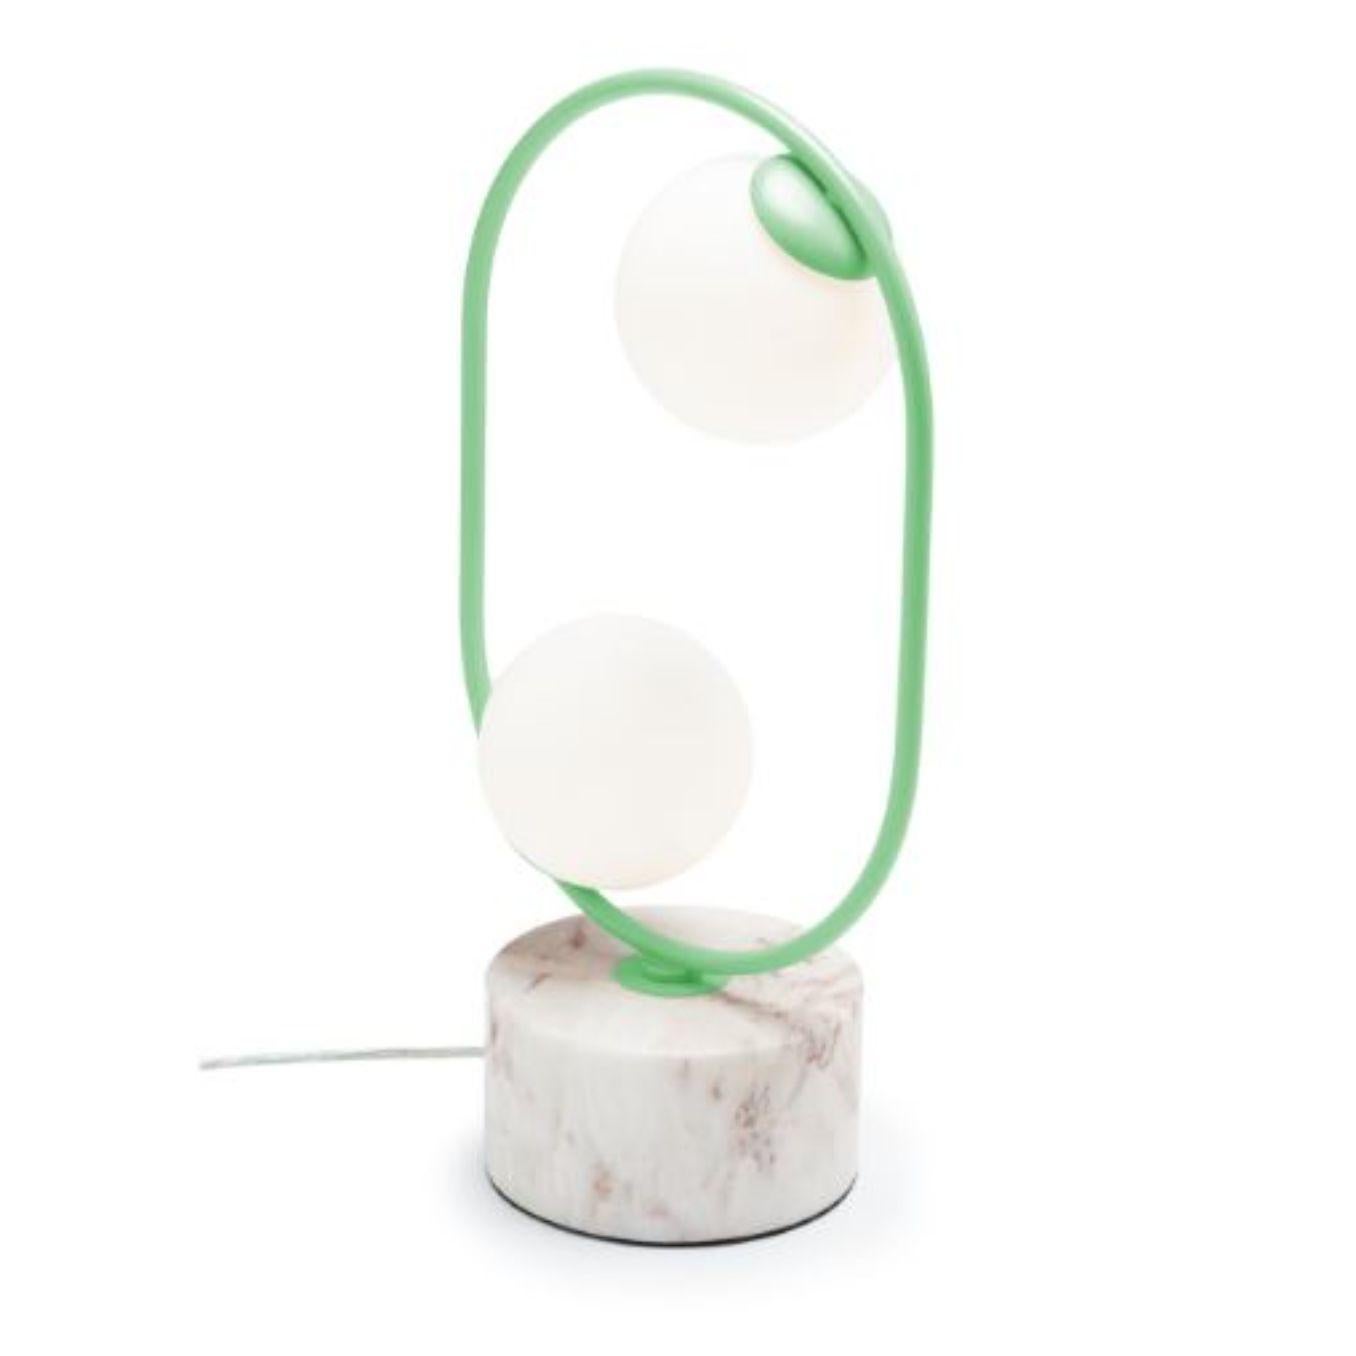 Lampe de table Dream Loop I avec base en marbre par Dooq
Dimensions : L 30 x P 15 x H 50 cm
Matériaux : métal laqué, métal poli ou brossé, marbre.
Disponible également en différentes couleurs et matériaux. 

Informations :
230V/50Hz
2 x max. G9
LED